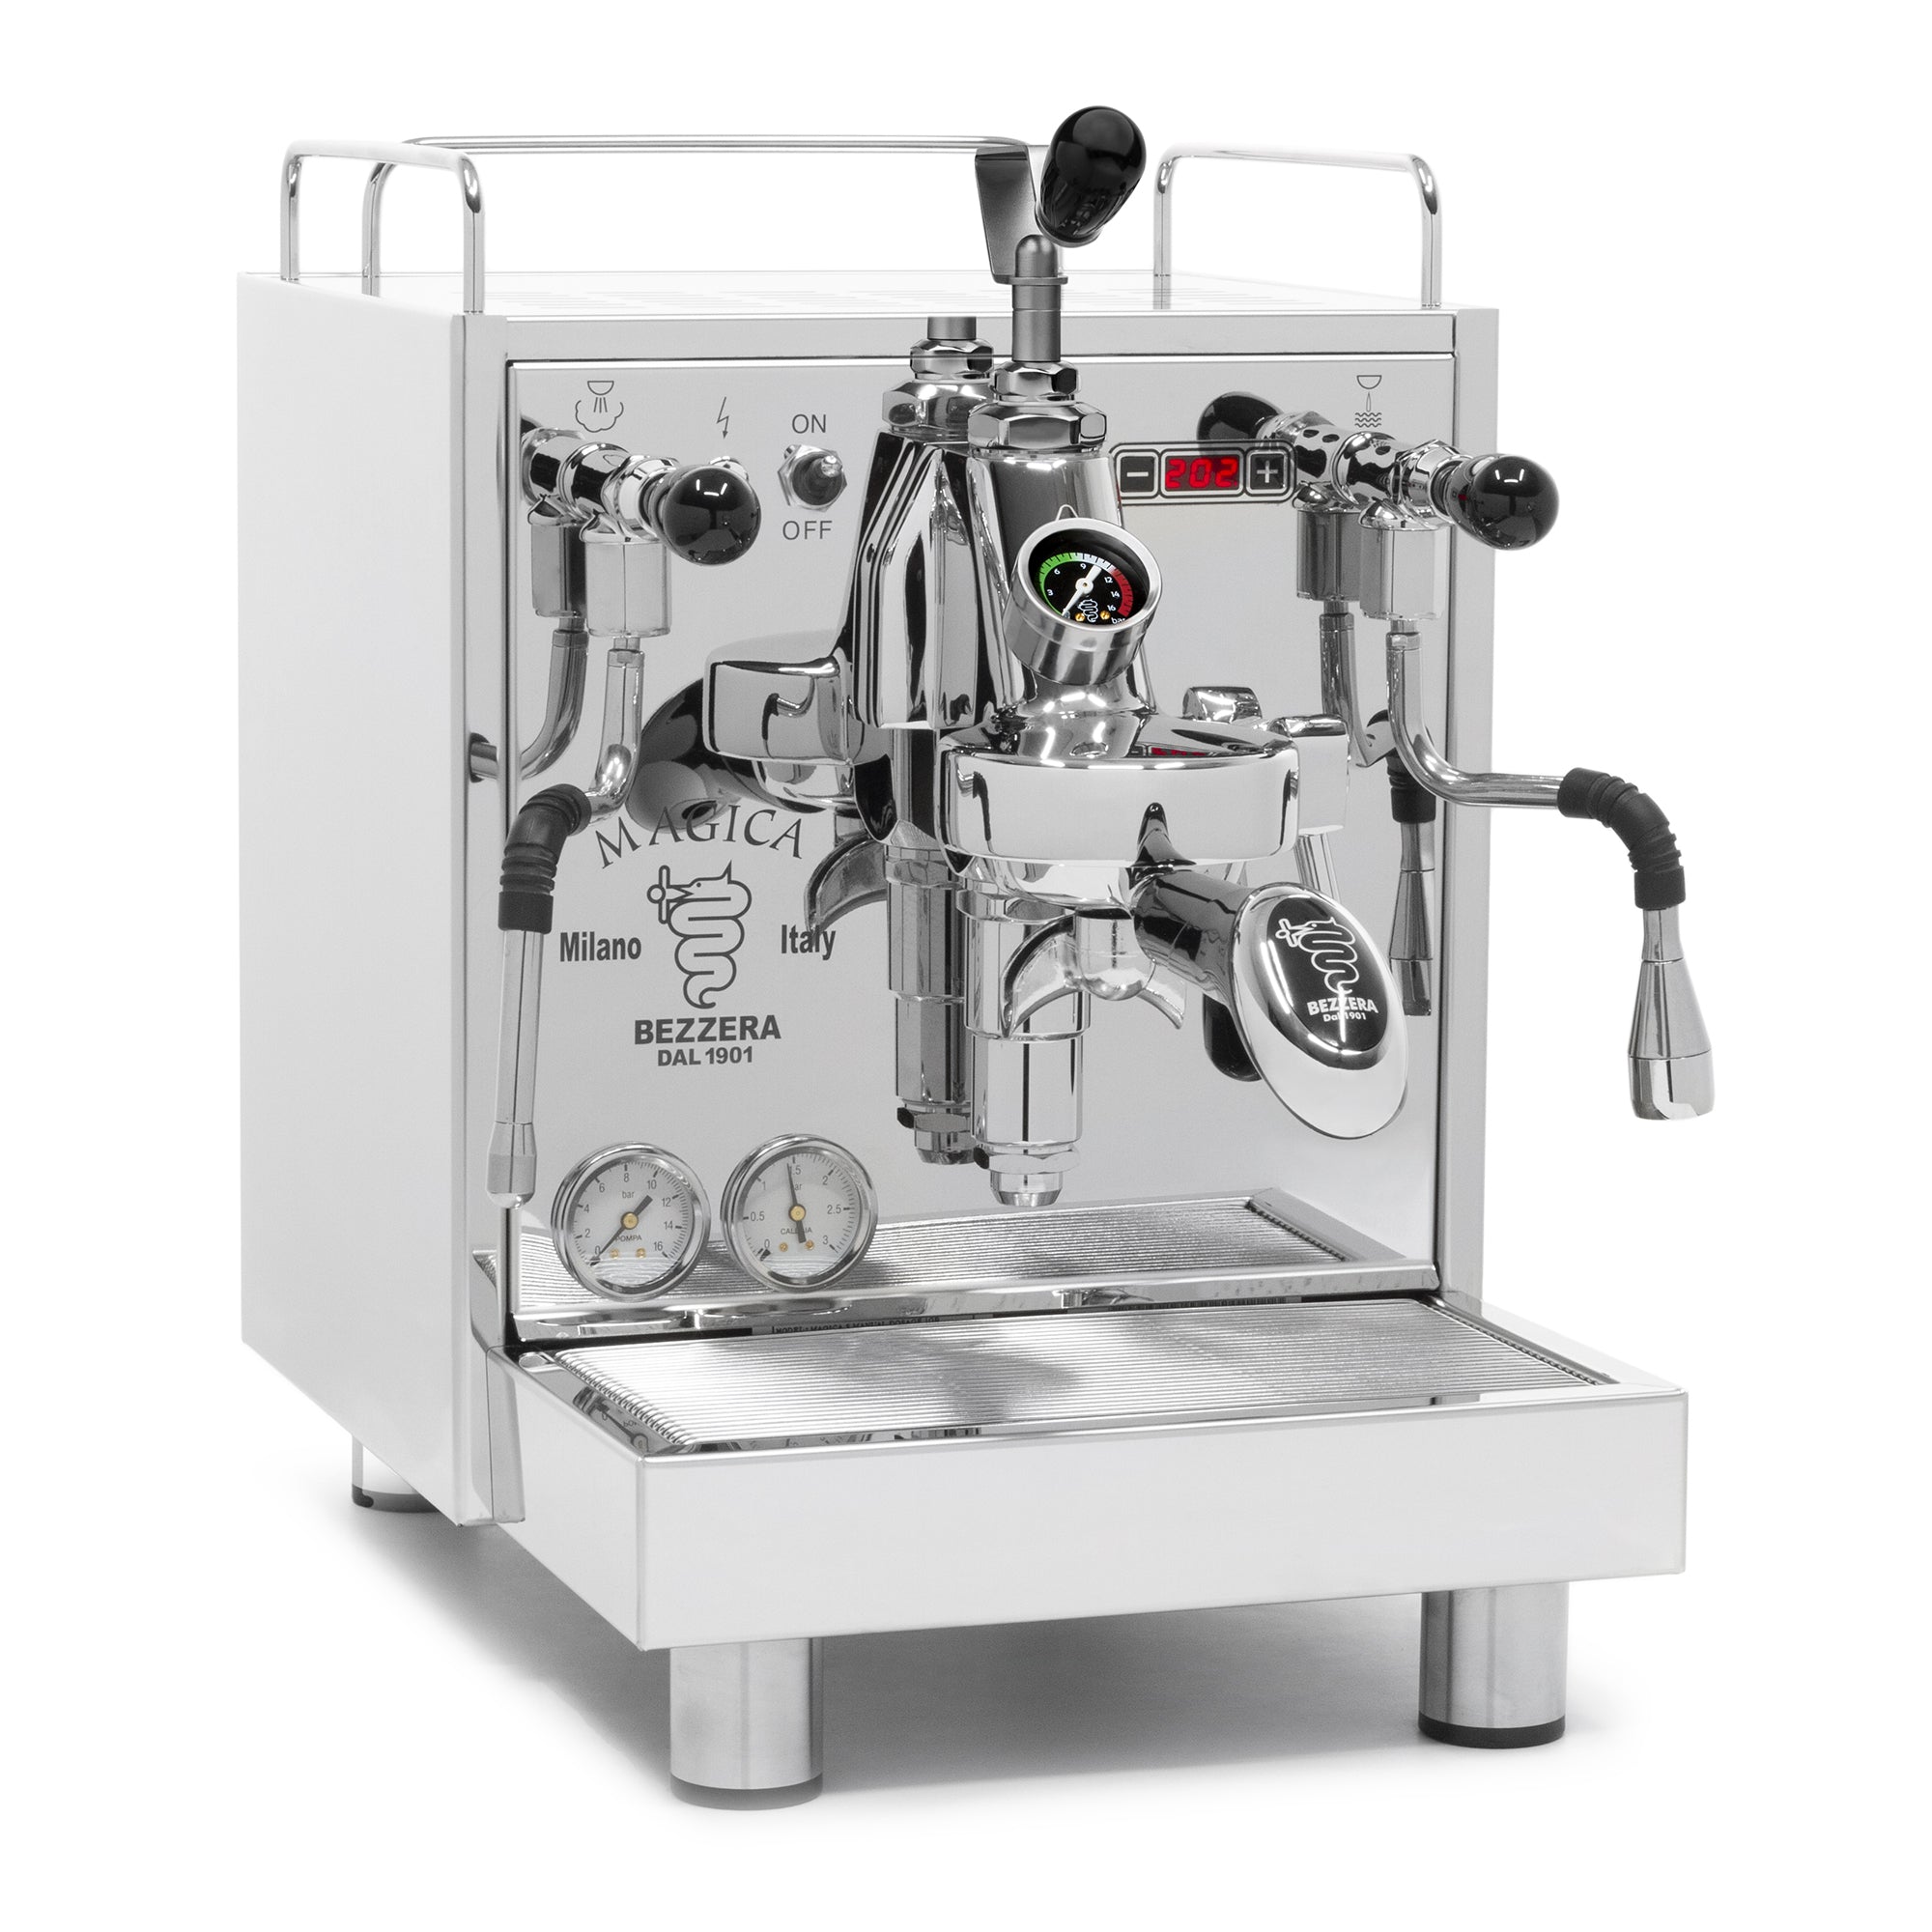 DeLonghi EC885M Dedica Arte Espresso Machine – Whole Latte Love